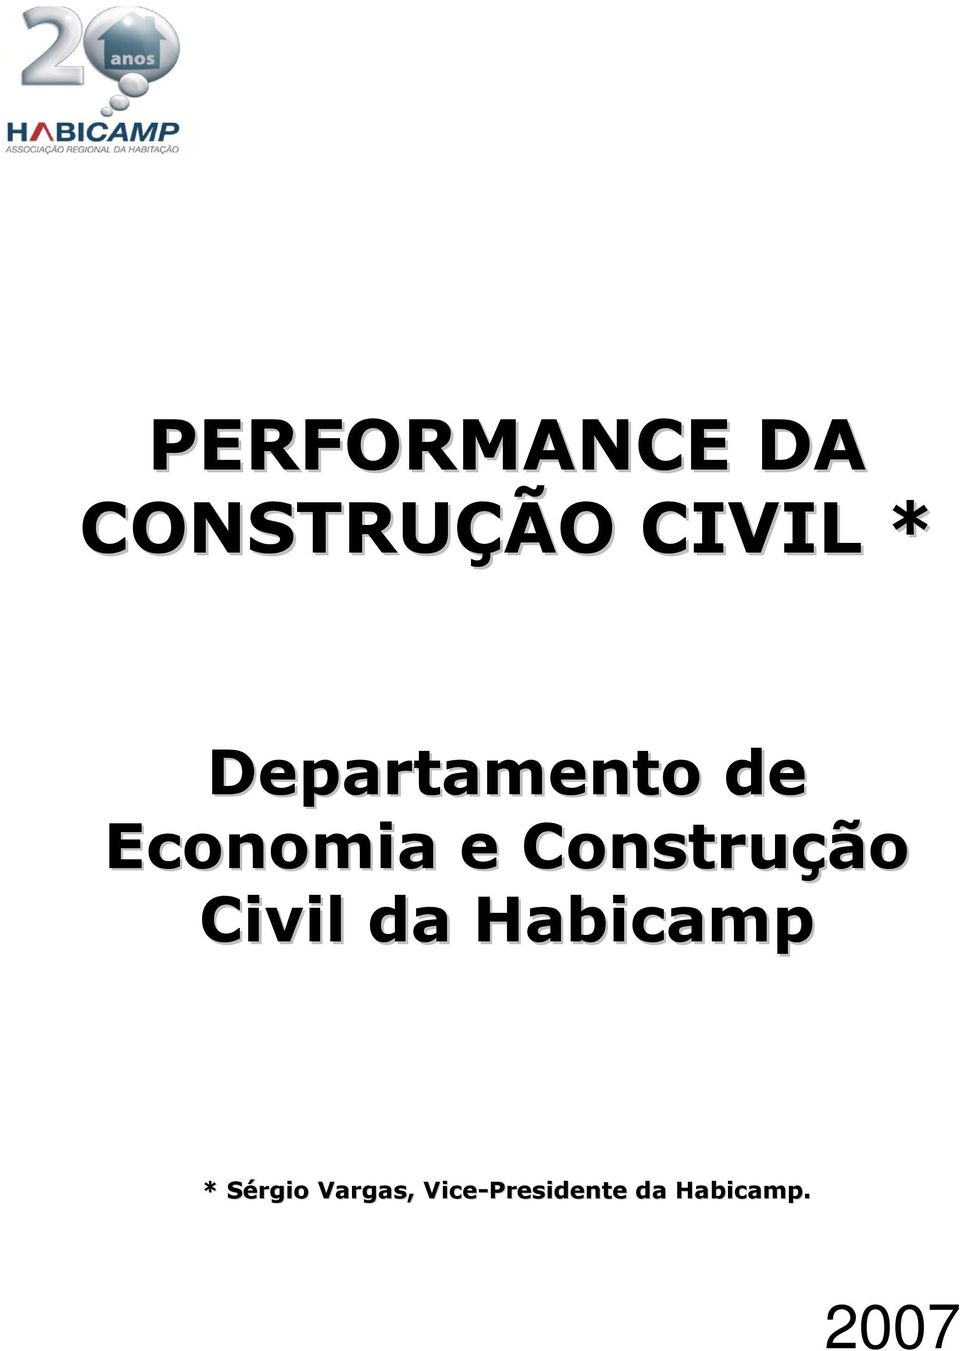 Construção Civil da Habicamp *